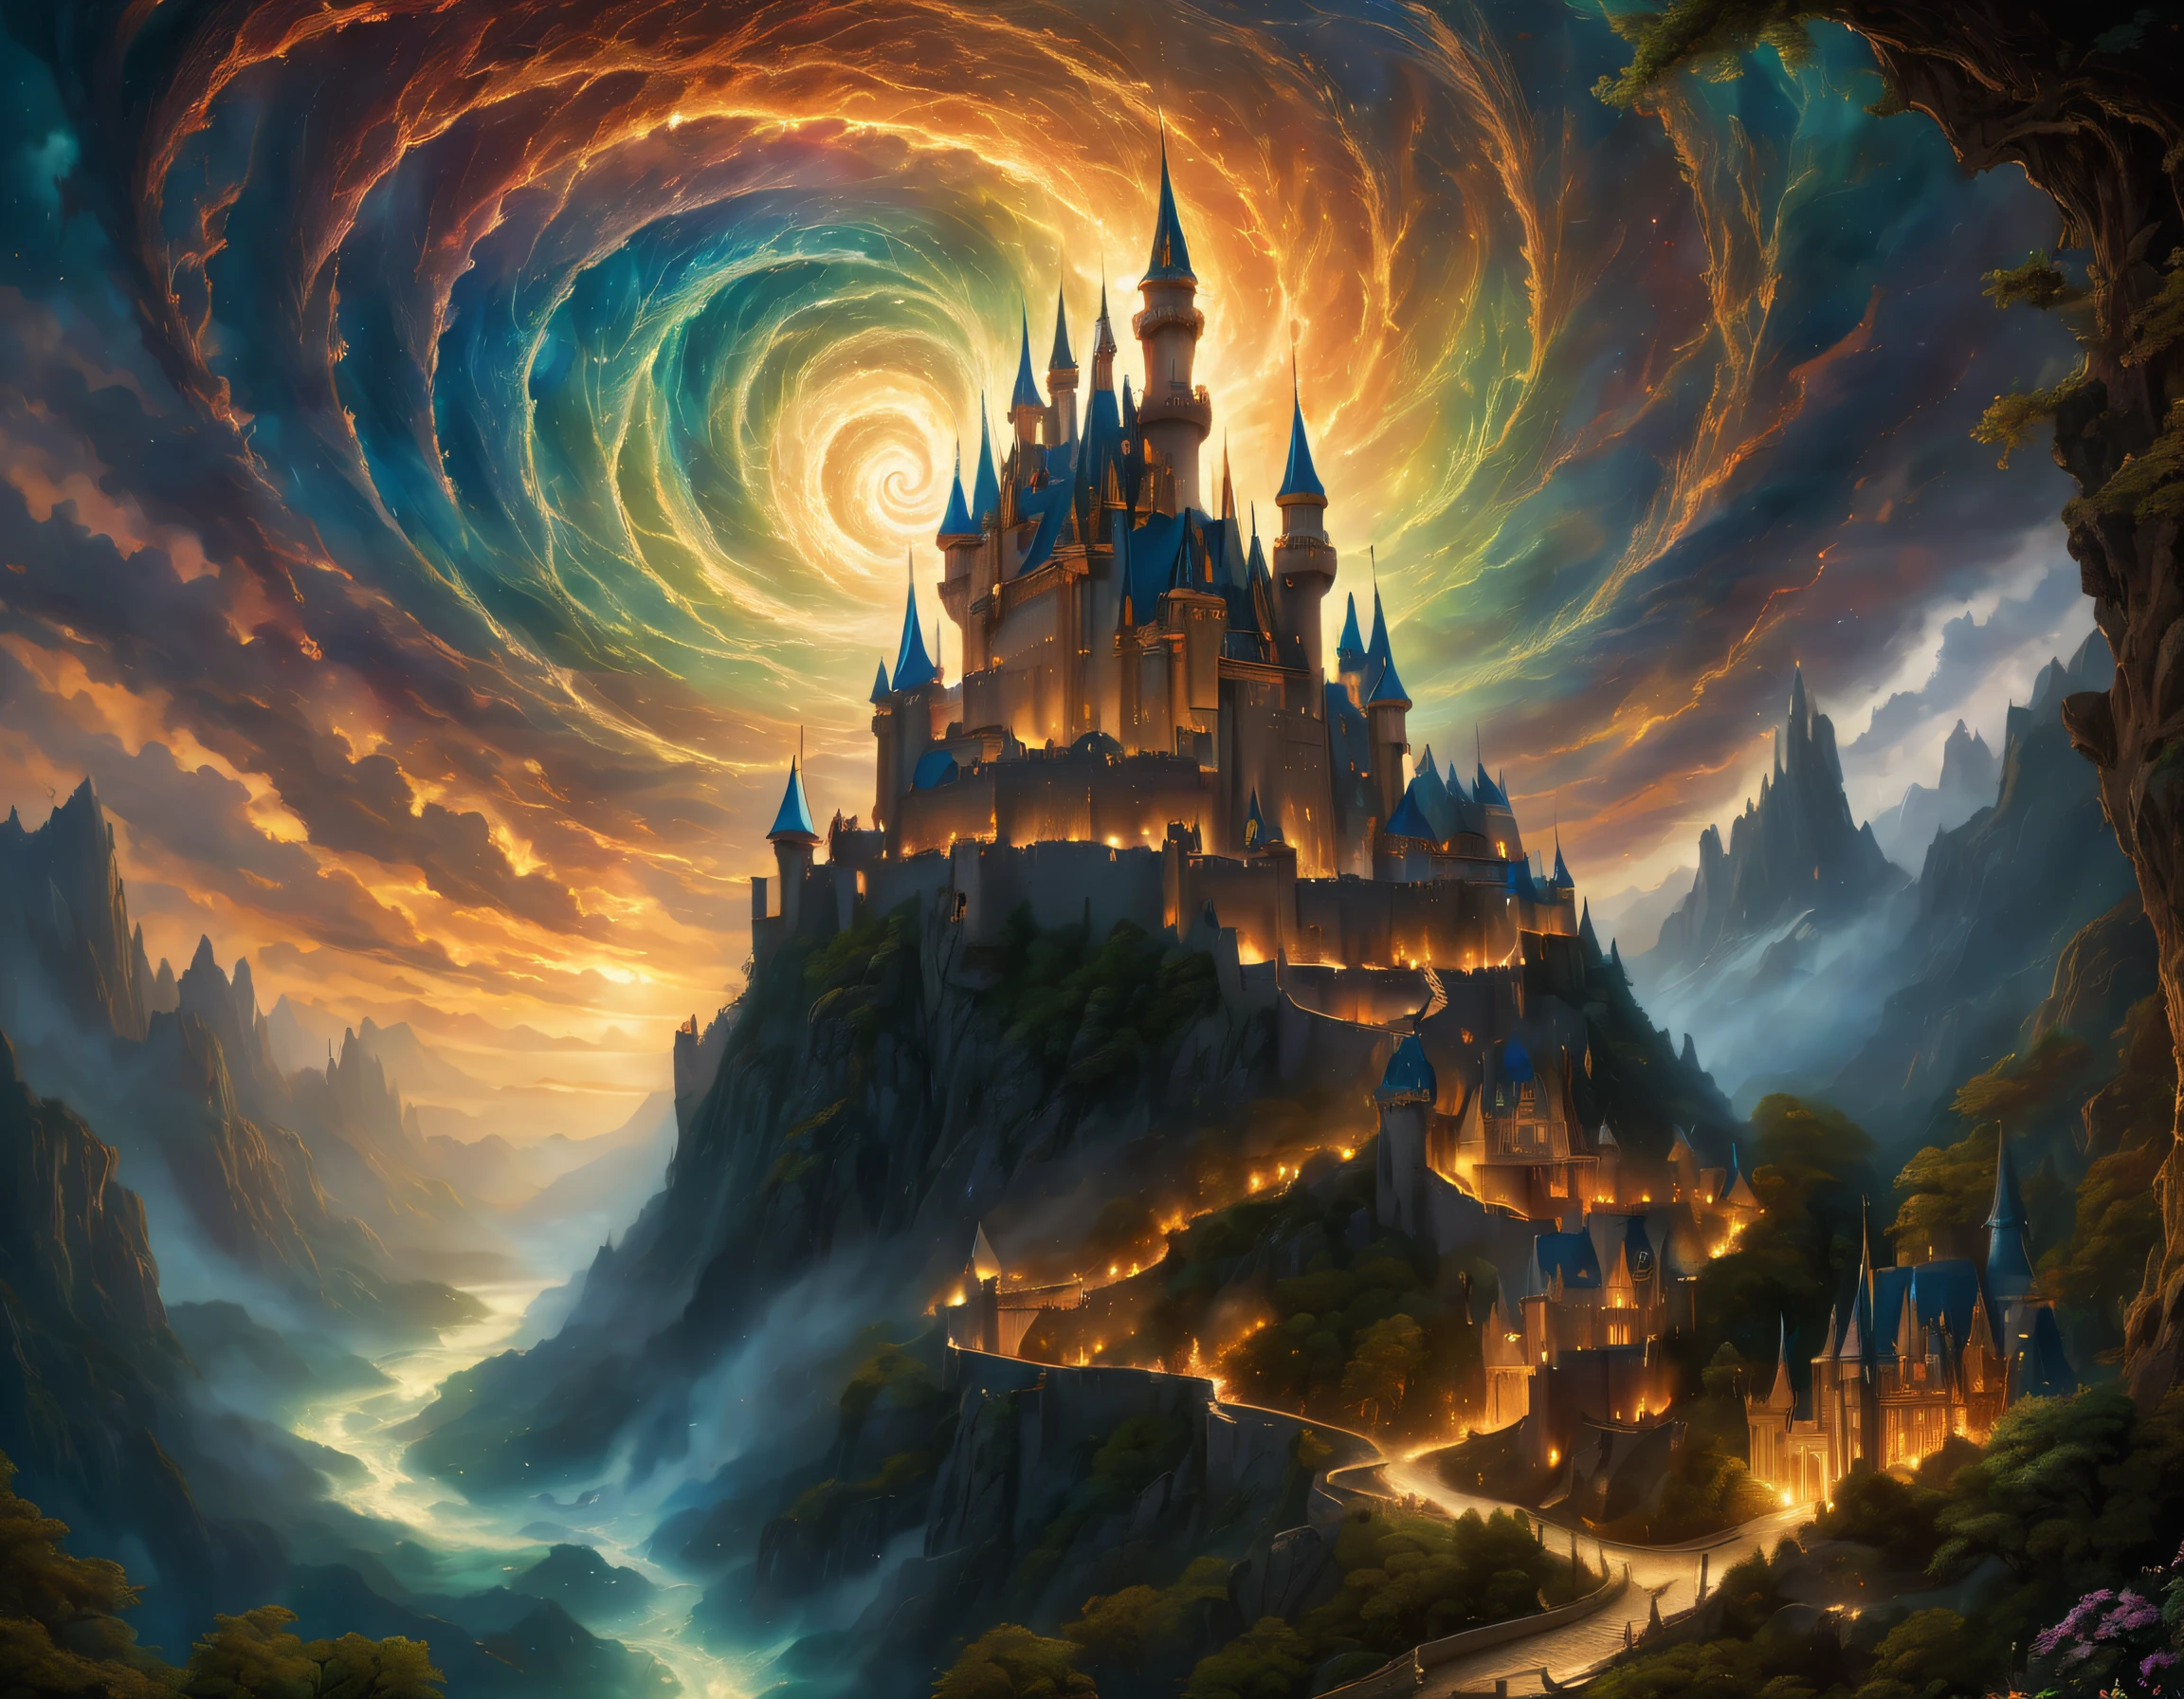 (((โปสการ์ดพร้อมภาพประกอบธีมหลัก:1.5))), (((โปสการ์ดมากมายรอบๆ กระแสน้ำวนที่หมุนวน:1.5))). (((A mythical dark fantasy castle with majestic และ powerful intricate color details:1.3))), intricately และ detailedly decorated, เวทมนตร์อันศักดิ์สิทธิ์ที่มีความแตกต่างอย่างน่าทึ่ง, Stunning very fine details that are fantastic และ enchanting, รายละเอียดที่ละเอียดมากน่าทึ่งมาก、Cybernetic wings และ intricate fairy-like details, A great contrast with the dark และ eerie atmosphere of the castle, ฝีแปรงคุณภาพสูงให้ความสมจริงเหมือนภาพถ่าย. มองจากมุมที่น่าทึ่ง, (((4K pixel ultra-detailed และ ultra-realistic masterpiece:1.3))), Highly intricate และ fine detail quality, Fantastic และ mysterious atmosphere, Light และ shadow interaction, ภาพเหมือนภาพถ่ายที่มีรายละเอียดดีเยี่ยม, รายละเอียดที่ดีอย่างน่าอัศจรรย์、สีสดใส, คุณสมบัติที่สร้างความน่าหลงใหล, ความงามอีกโลกหนึ่ง, grและ และ majestic々และ, Expertly crafted shadow และ highlight details,